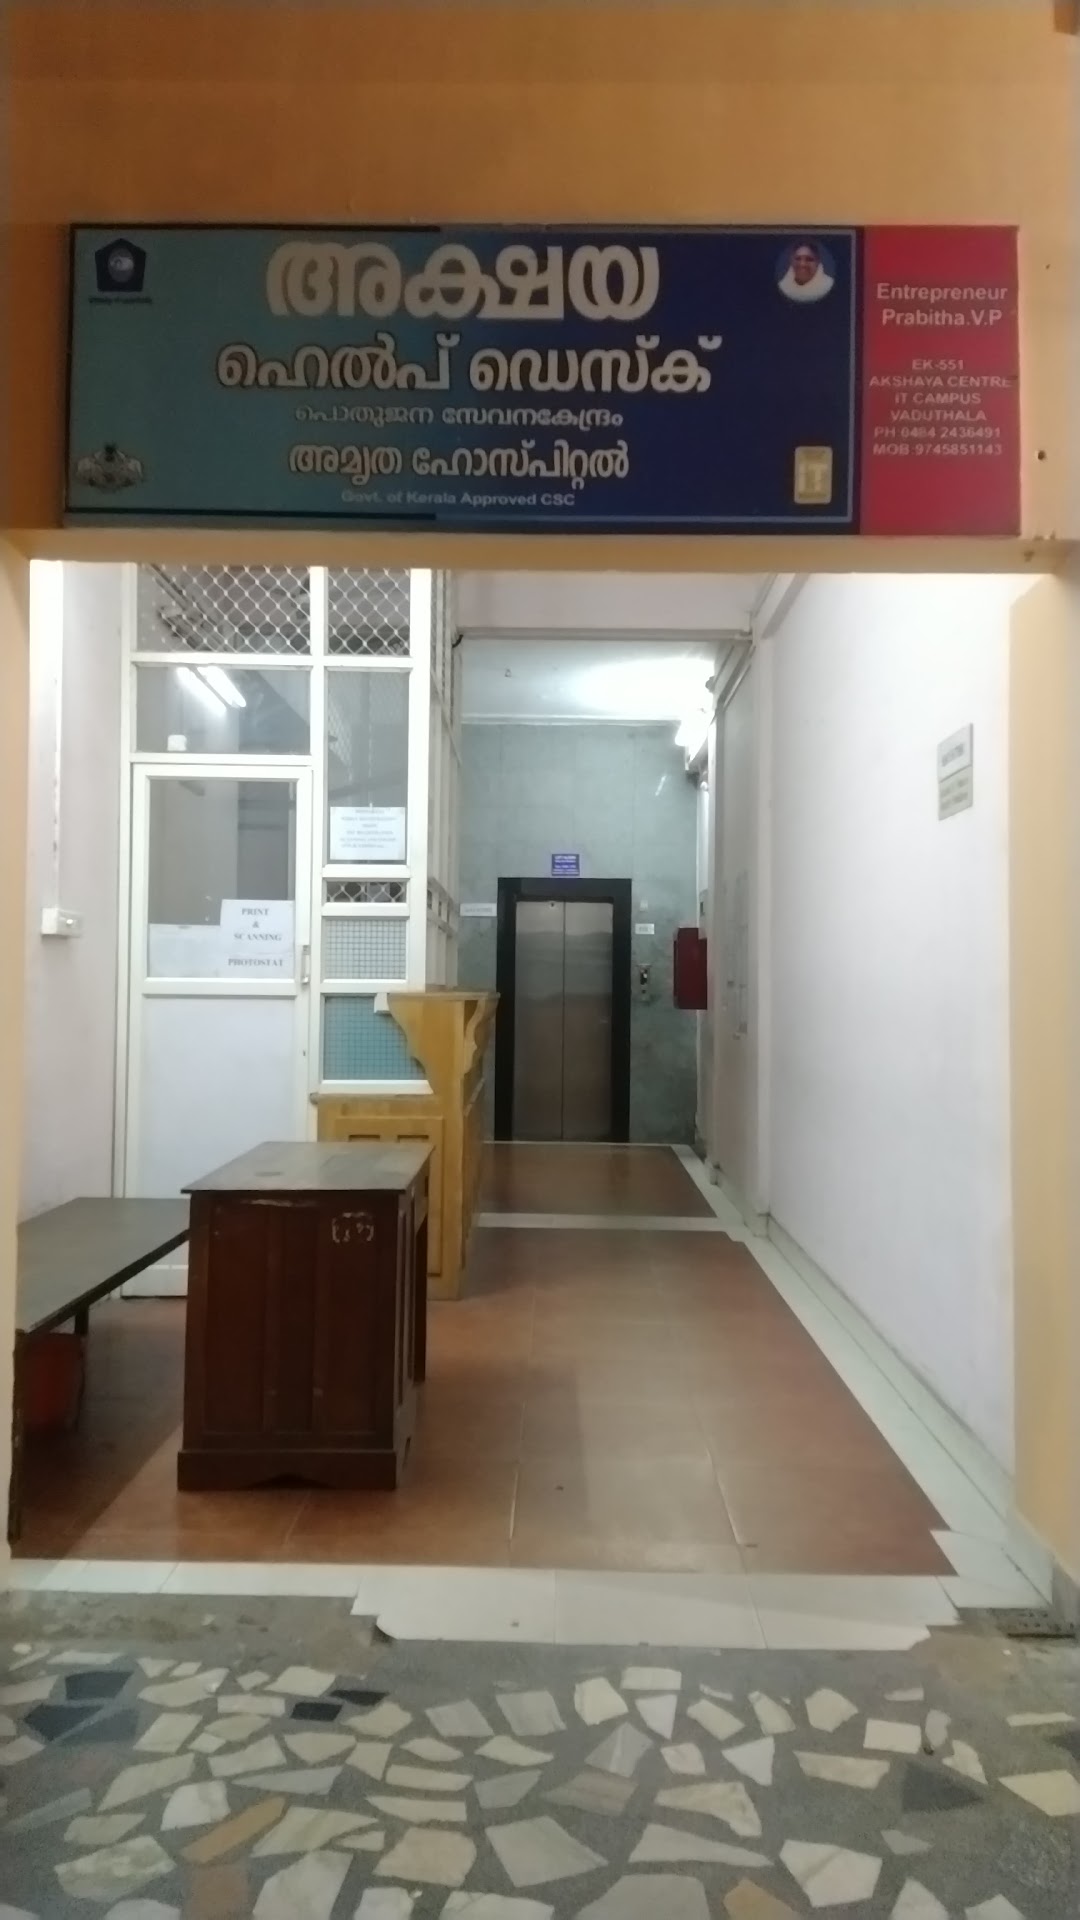 Akshaya E-Centre